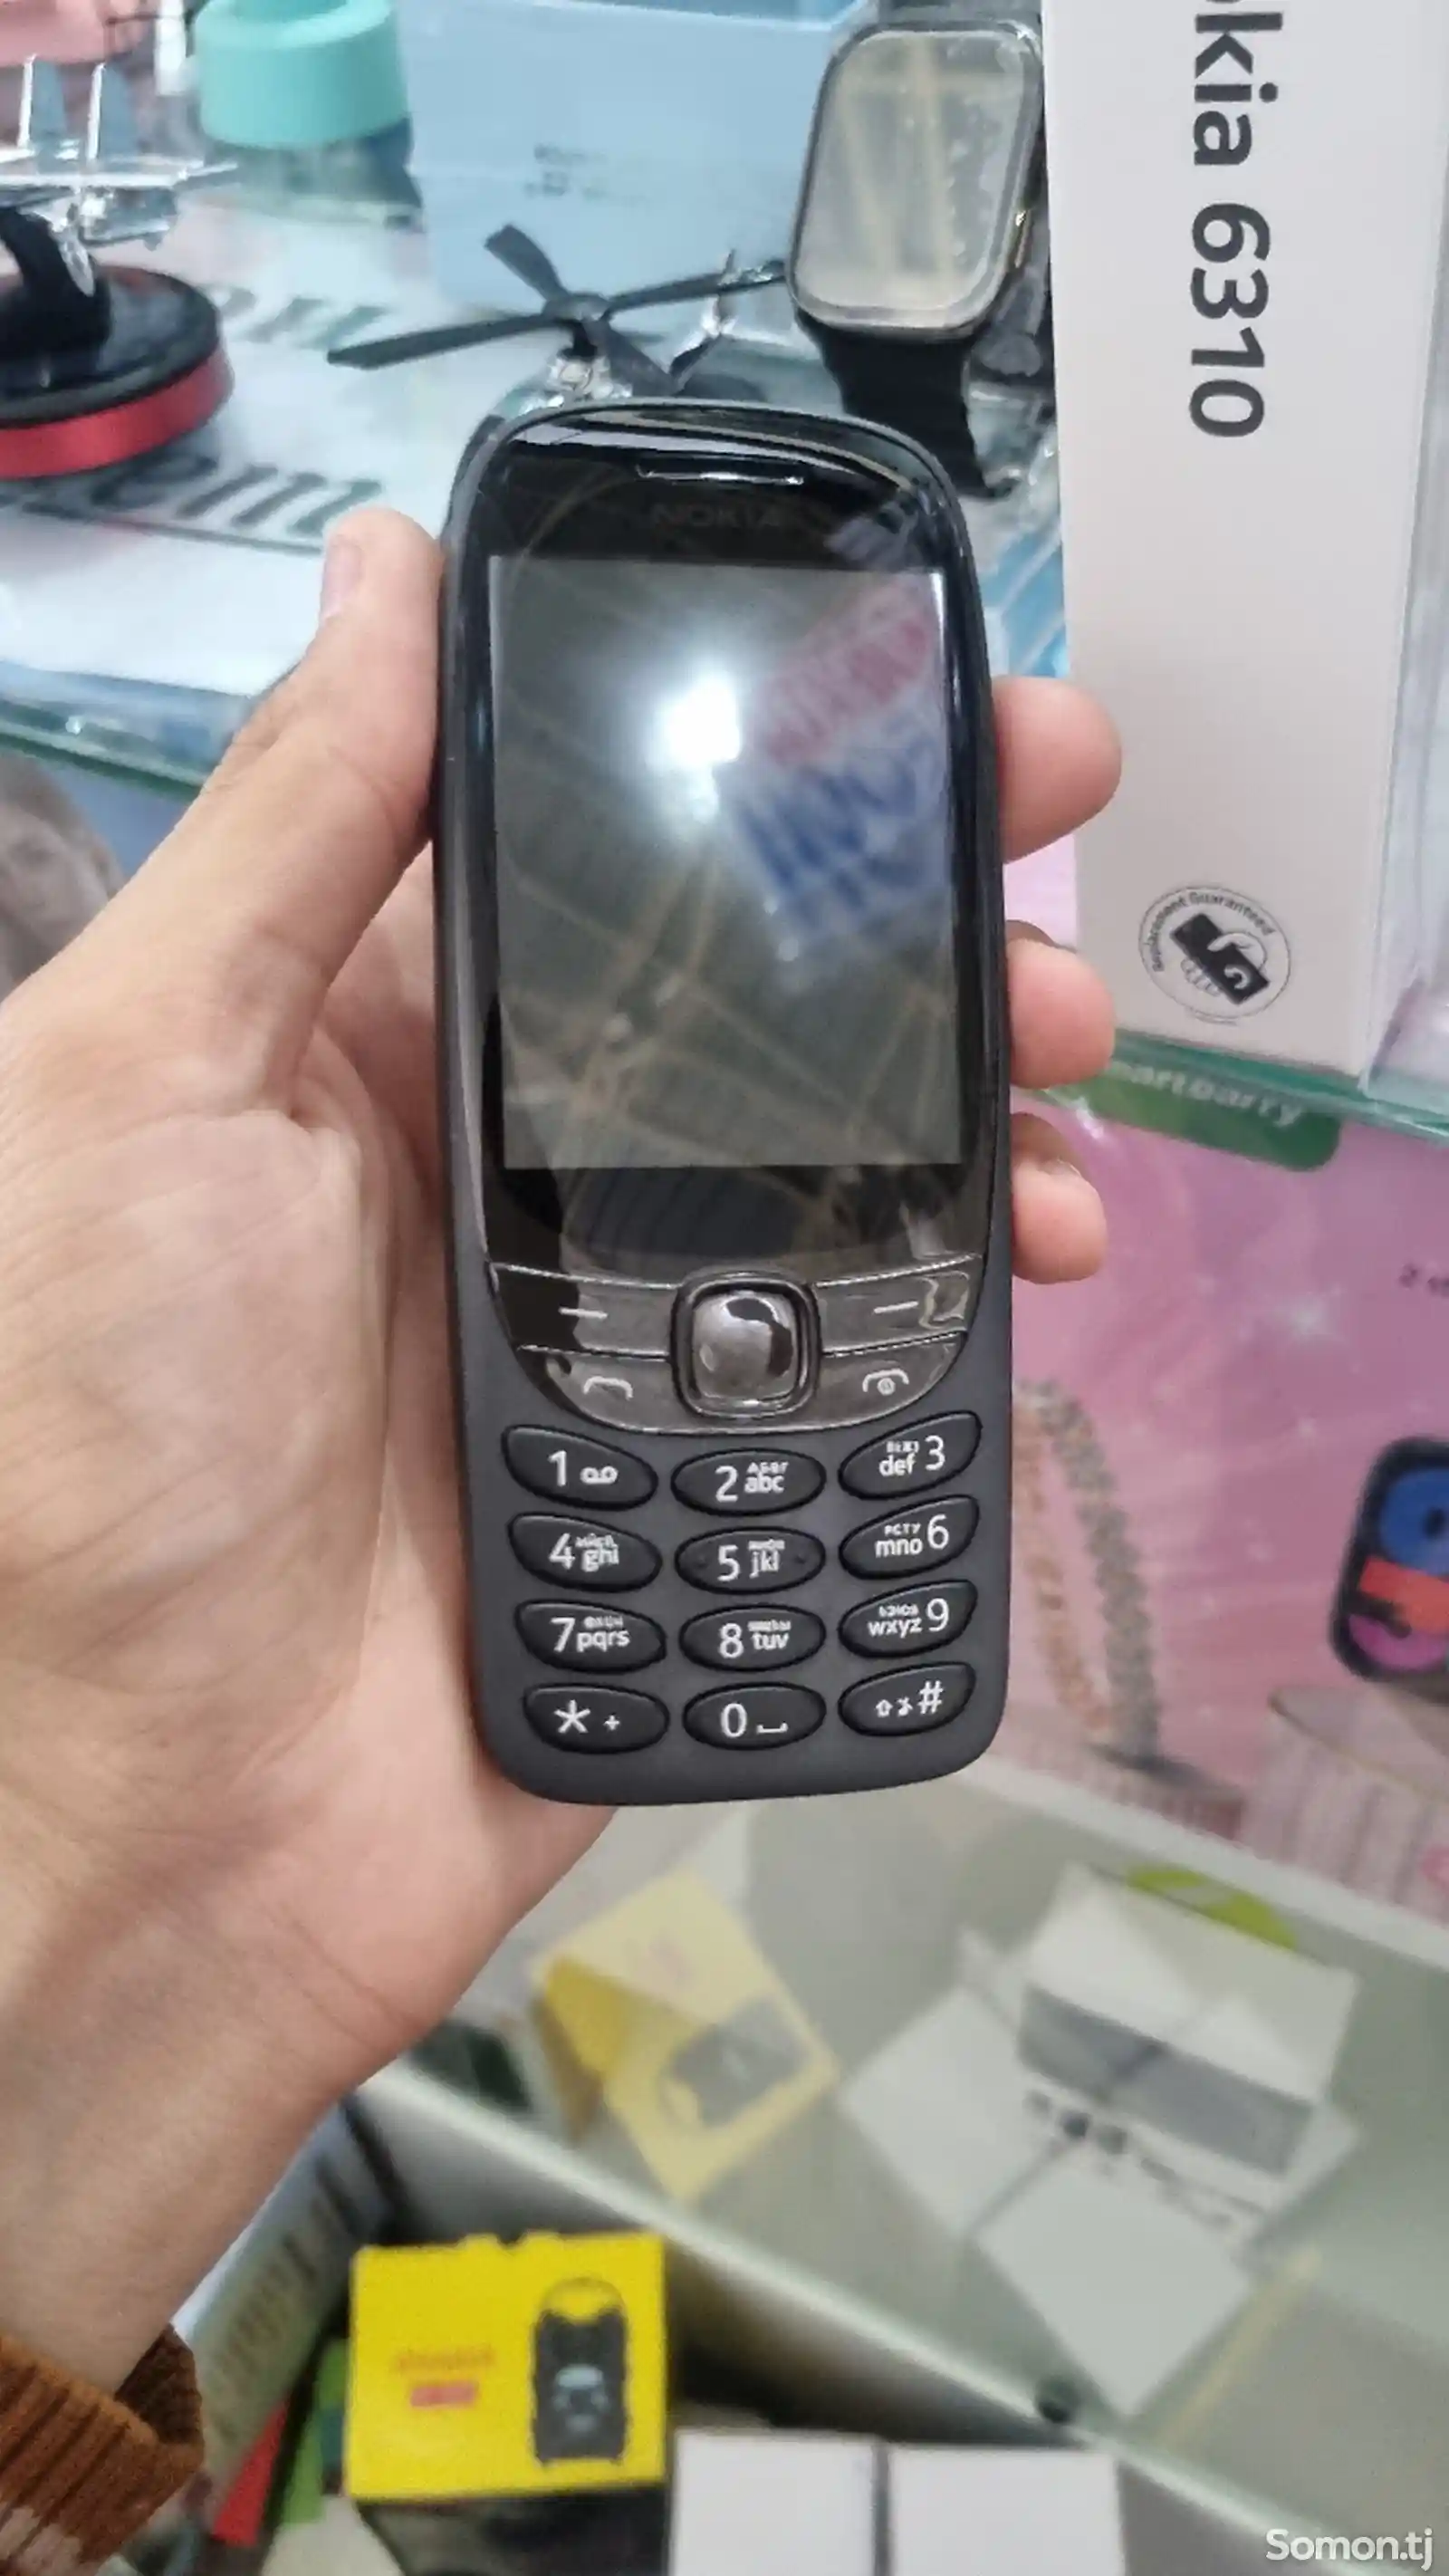 Nokia 6310 duos-3